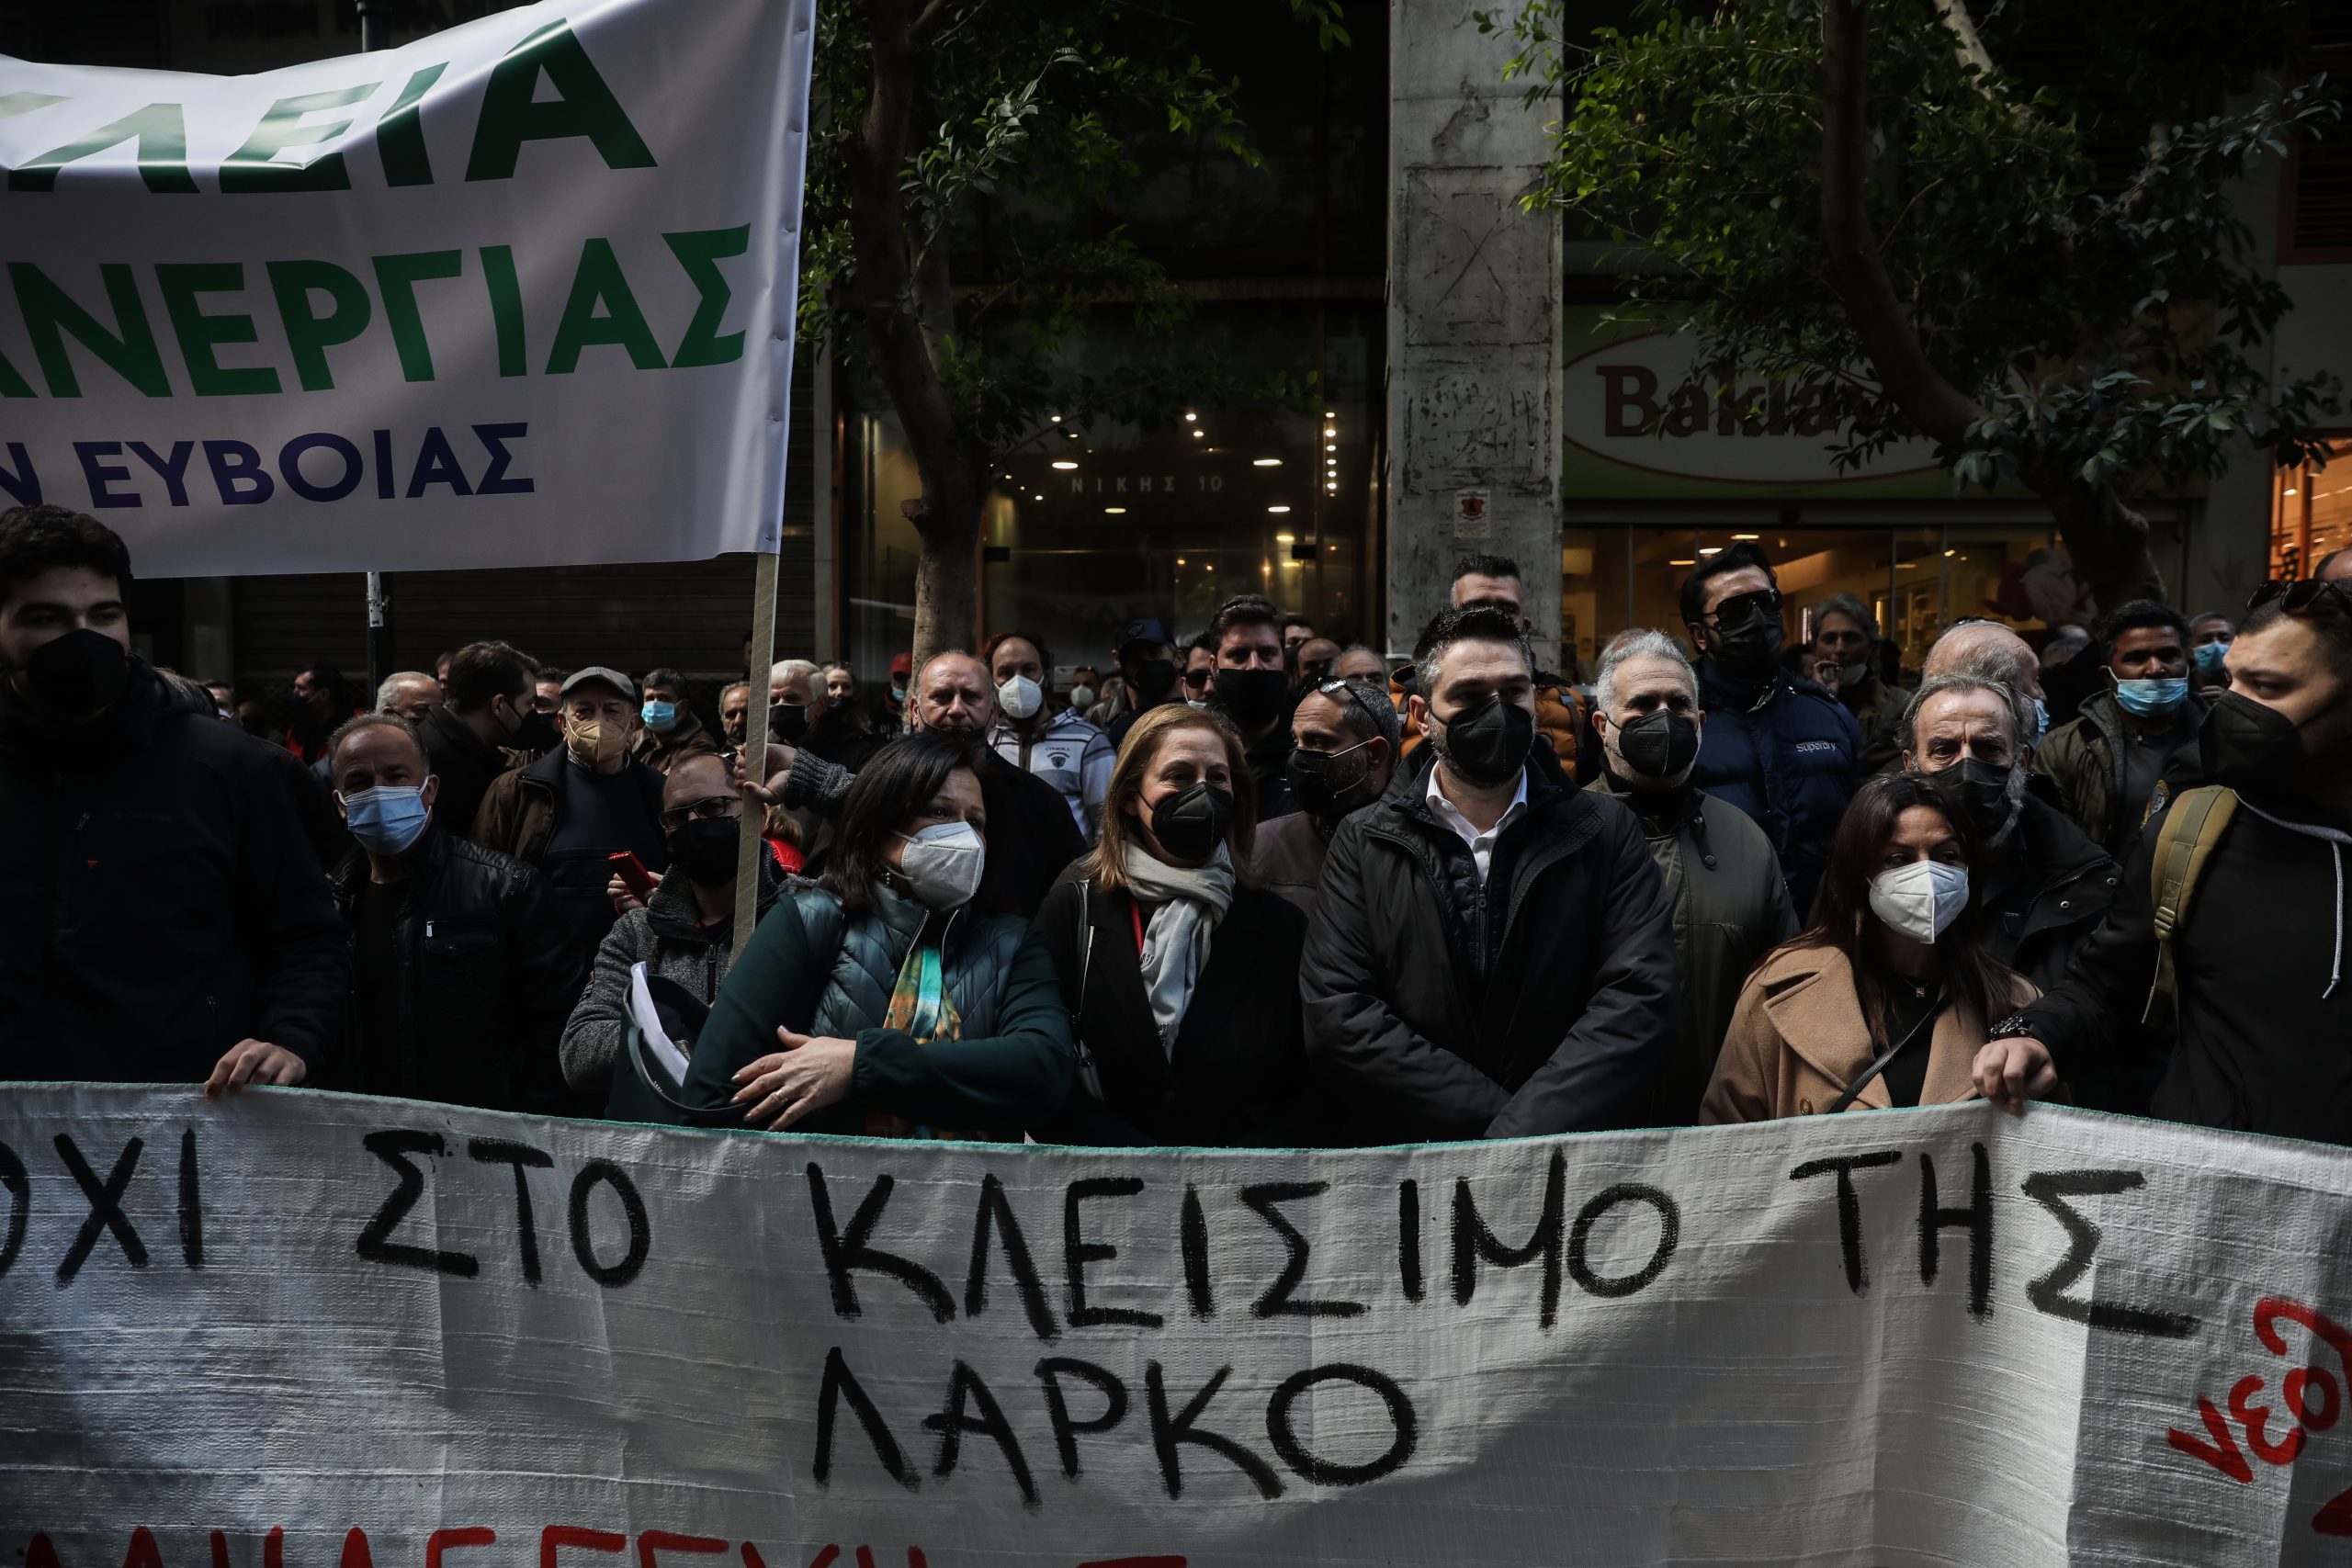 ΛΑΡΚΟ: Εκατοντάδες εργαζόμενοι απέκλεισαν το υπουργείο Οικονομικών φωνάζοντας «όχι στο κλείσιμο»! video